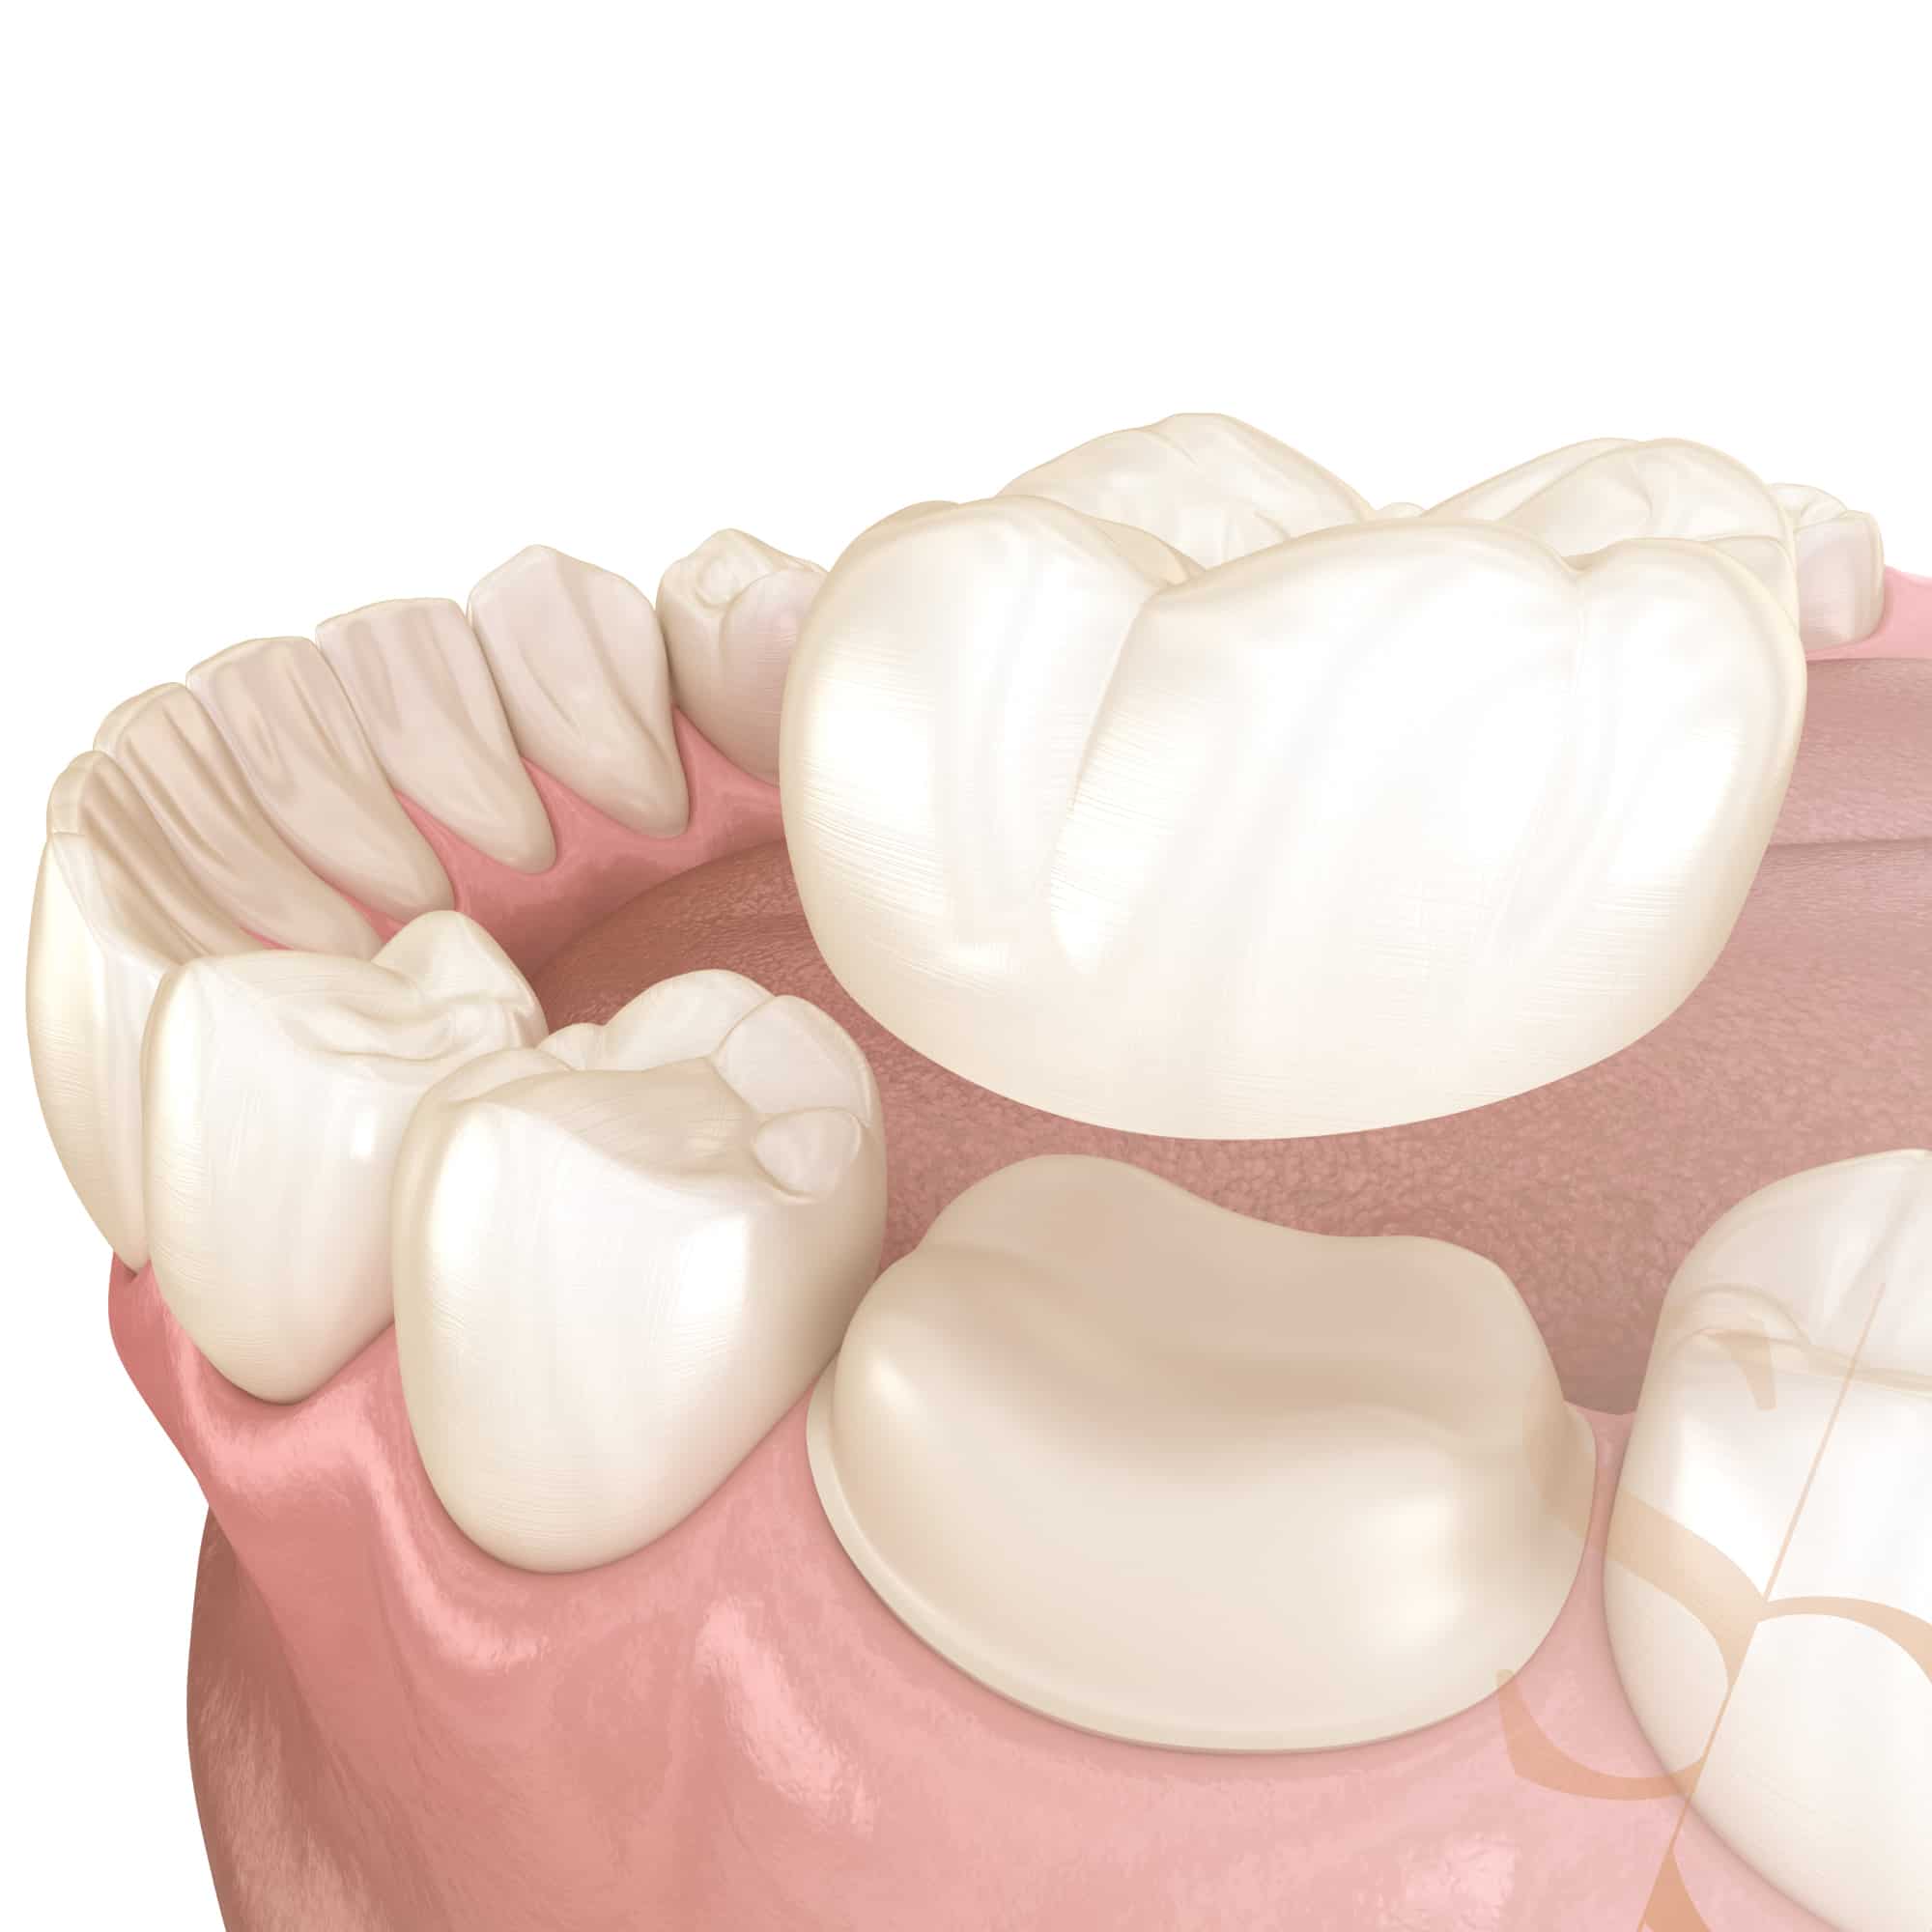 Quelle est la différence entre une facette dentaire et une couronne dentaire  ?, Clinique Sana Oris